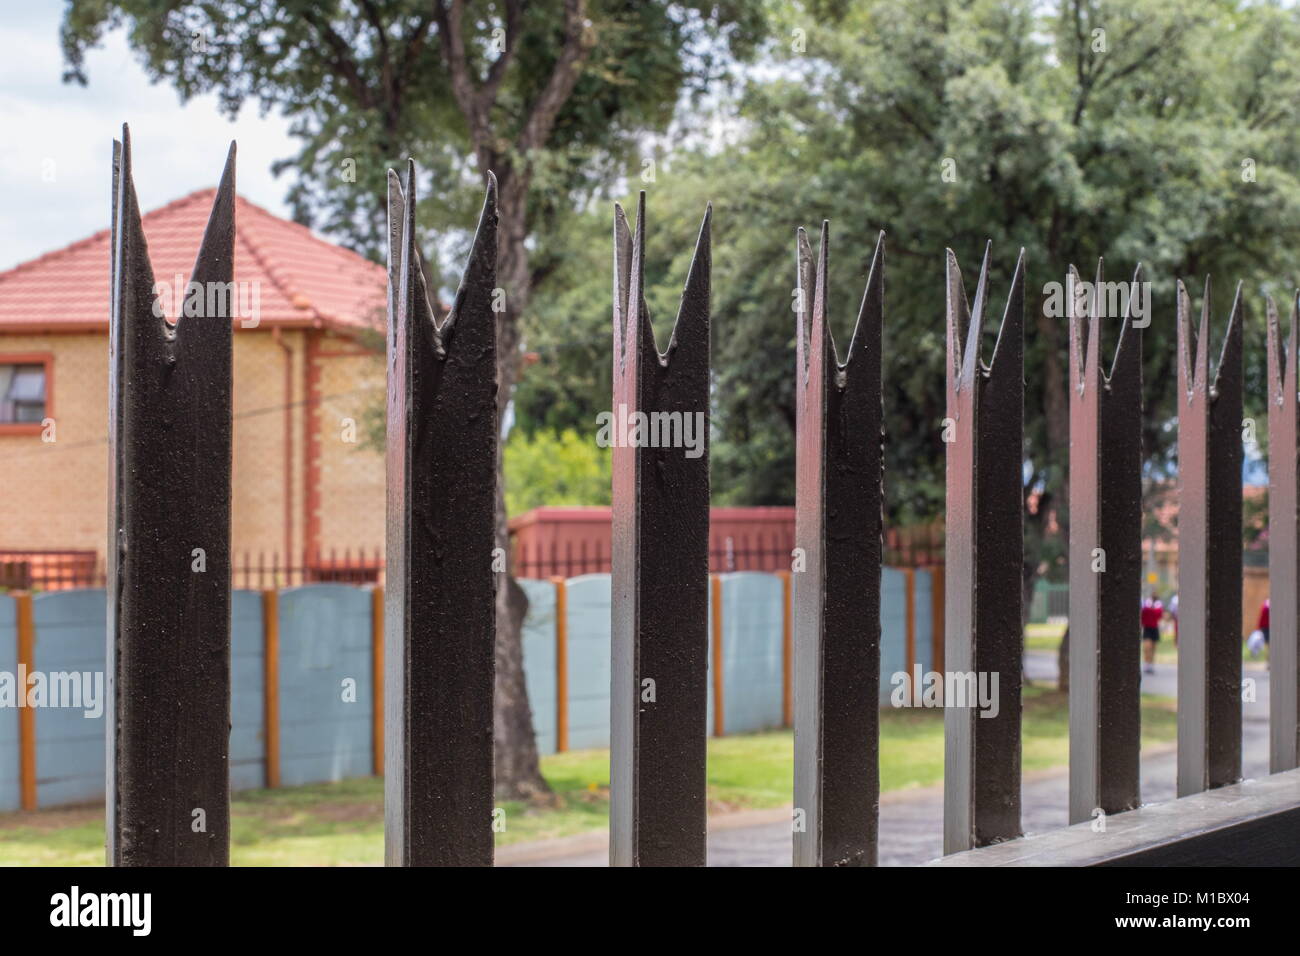 Johannesburg, Südafrika - mit Rife Arbeitslosigkeit und hohe Kriminalität Statistiken im Land, private Sicherheits- und Home Security Maßnahmen haben zugenommen Stockfoto